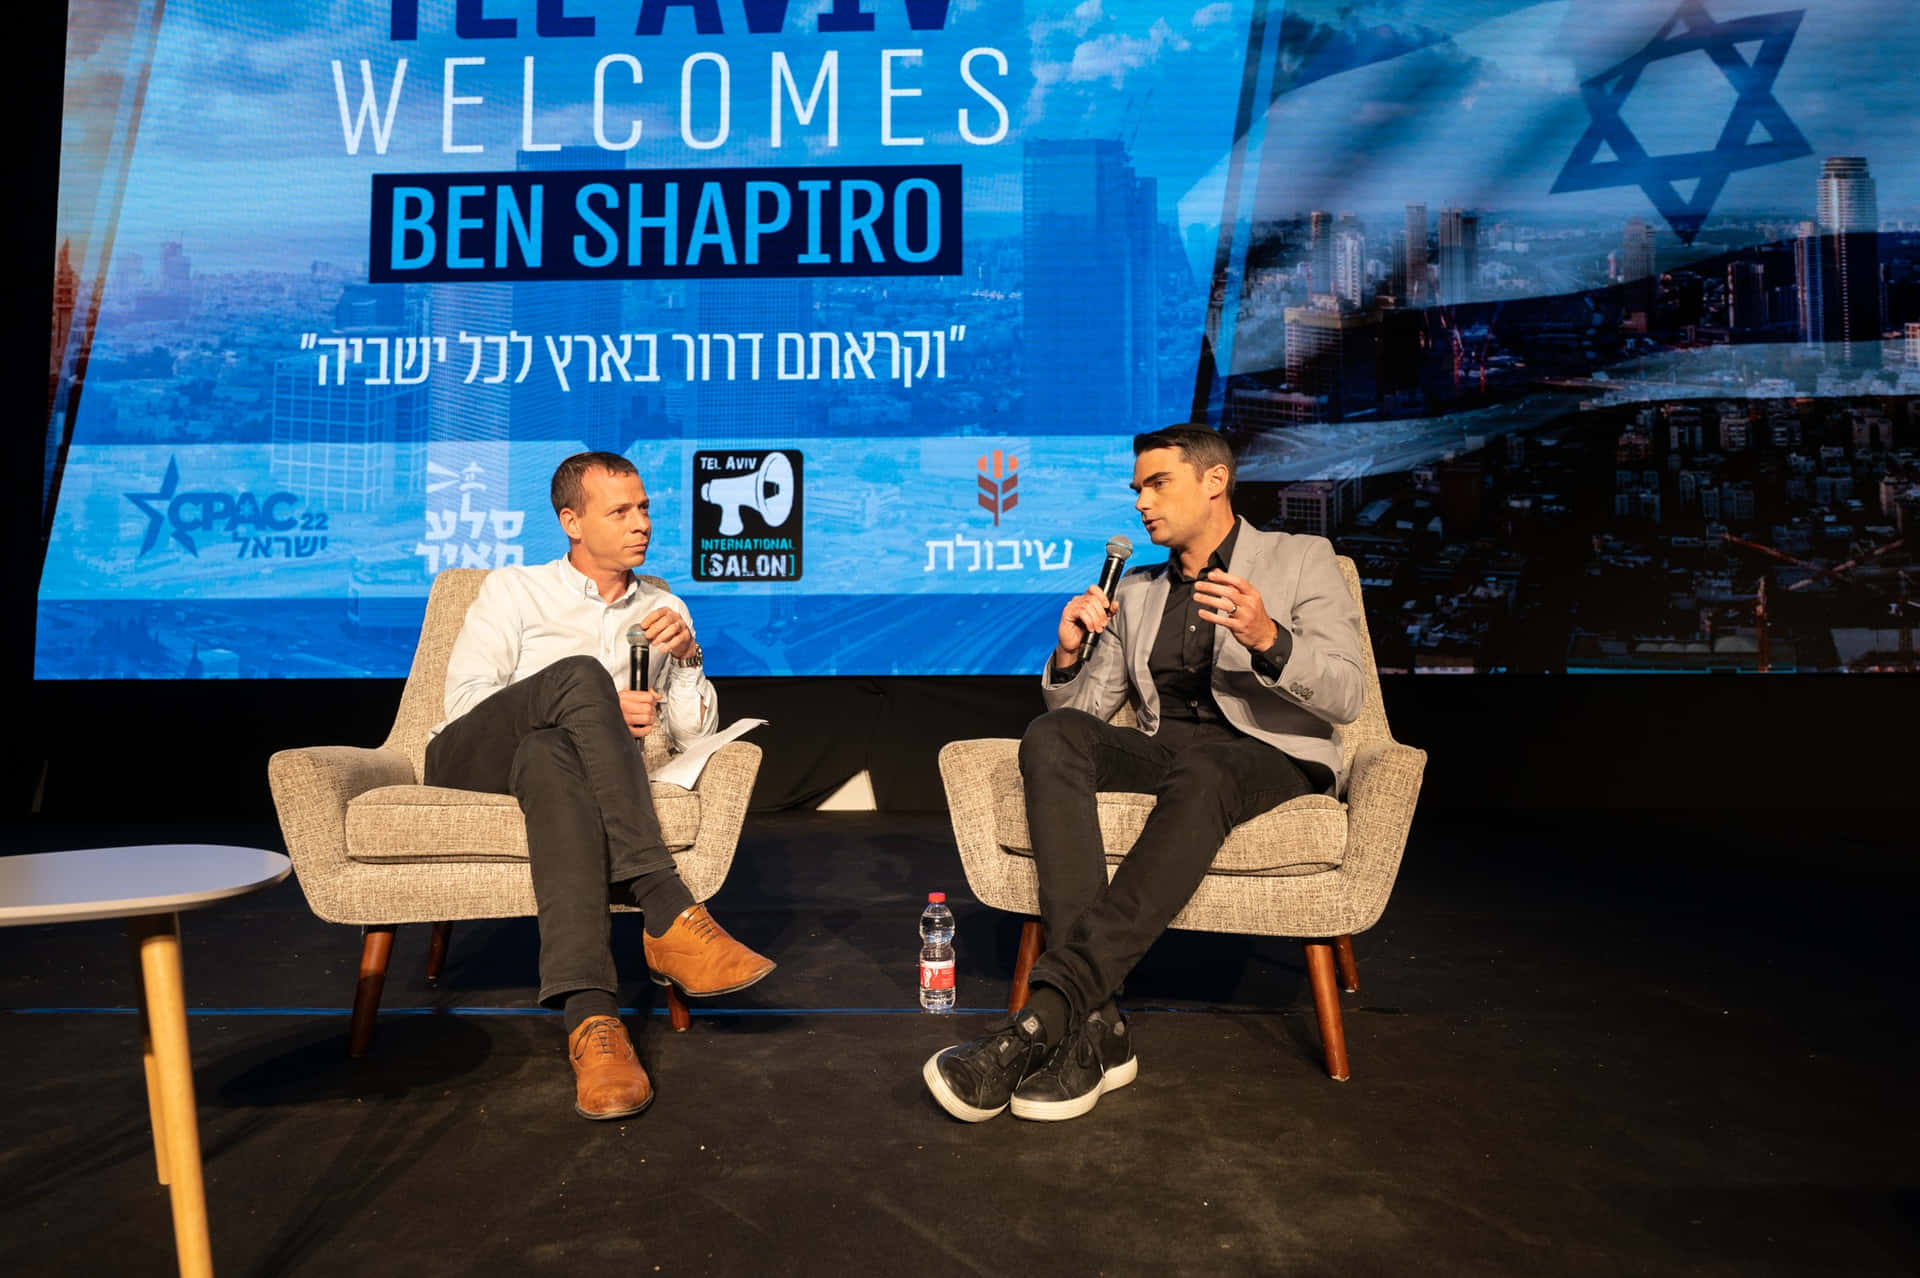 Benshapiro É Um Autor Americano E Apresentador De Podcast, Que Se Tornou Uma Voz Influente Nos Círculos Conservadores E De Direita.